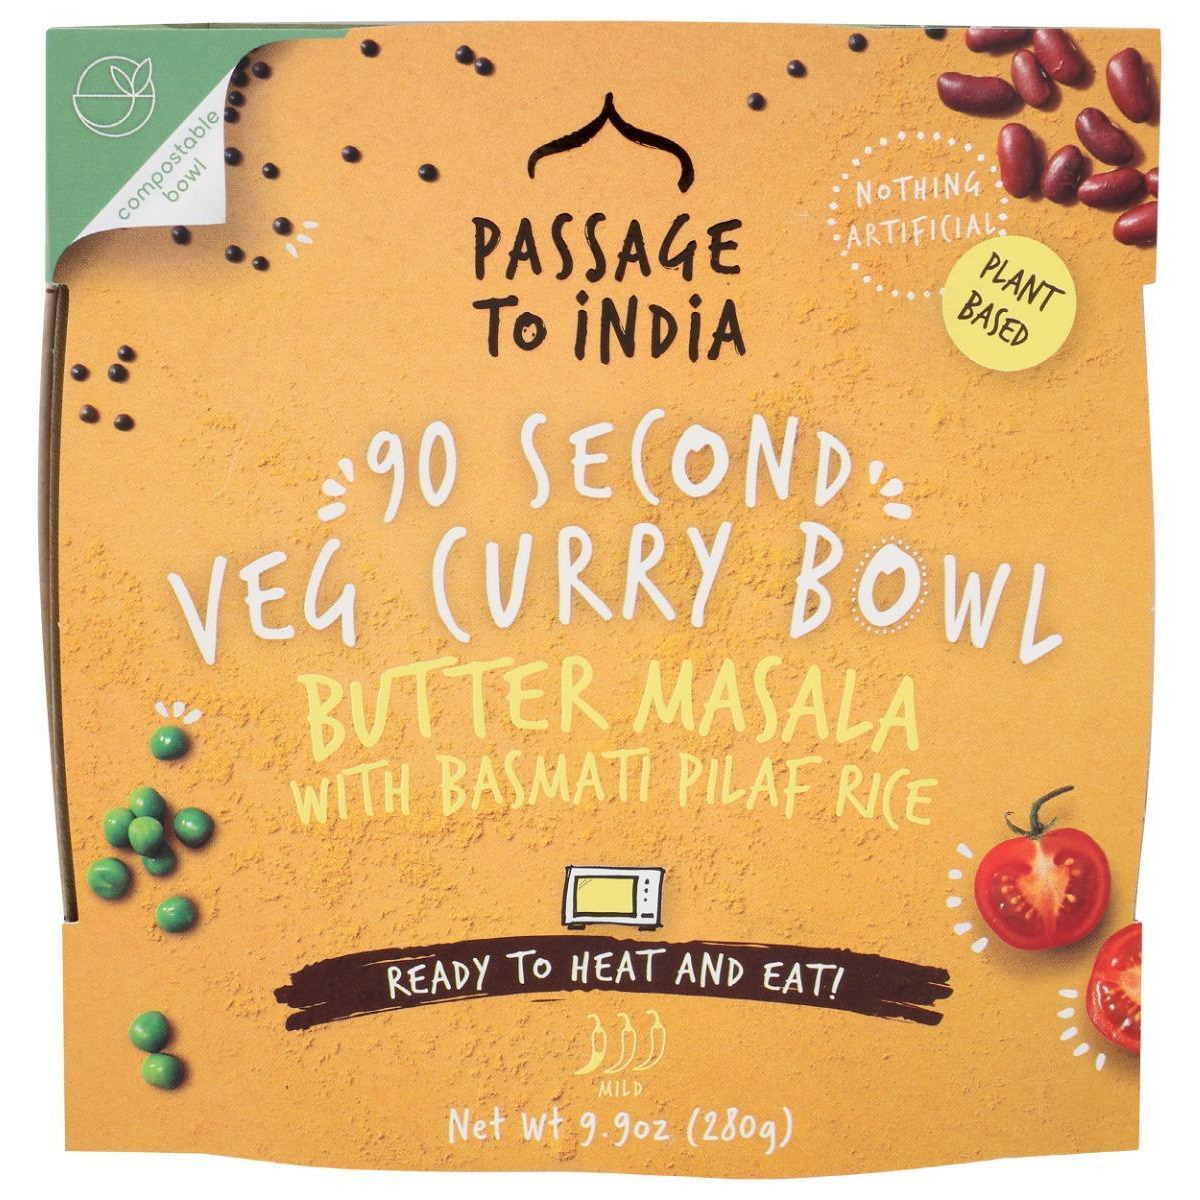 Passage Foods KHRM00367450 9.87 oz Butter Masala Veg Curry Bowl